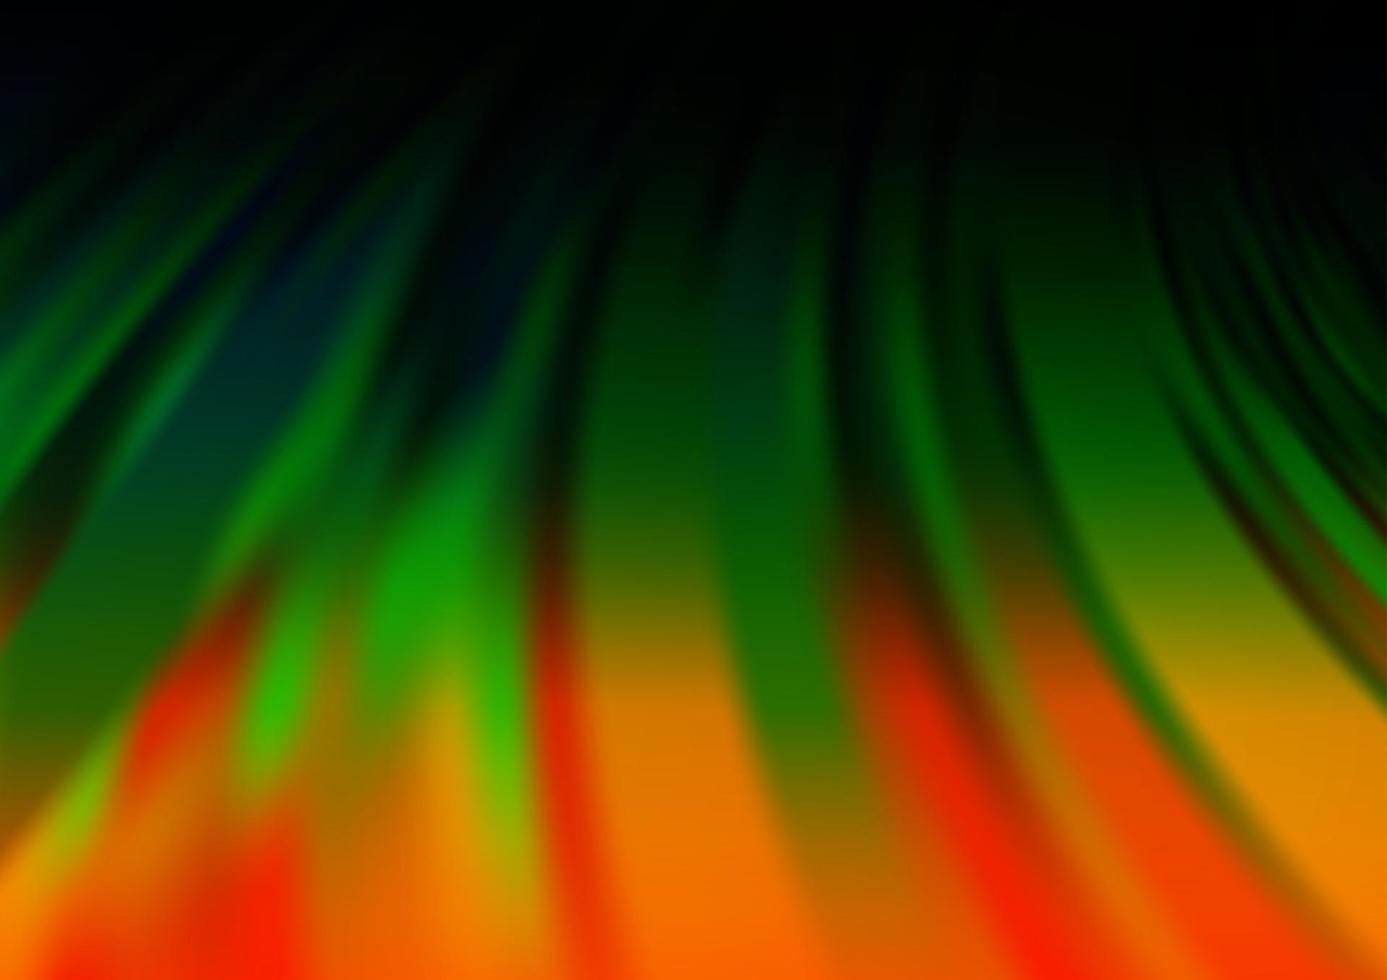 modelo borrado escuro multicolorido do sumário do vetor do arco-íris.